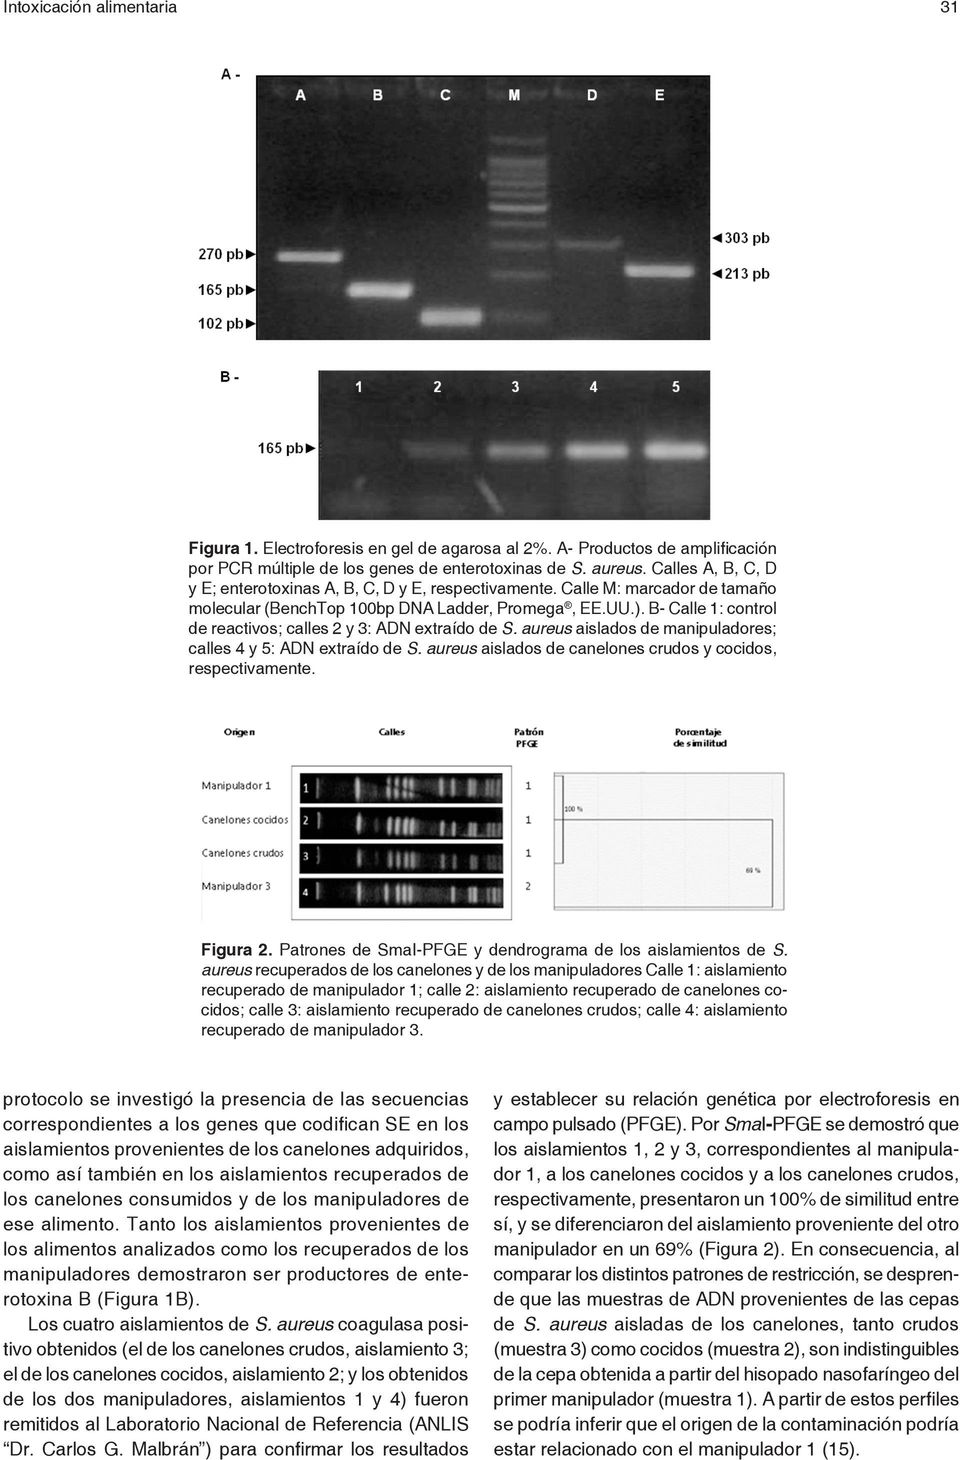 B- Calle 1: control de reactivos; calles 2 y 3: ADN extraído de S. aureus aislados de manipuladores; calles 4 y 5: ADN extraído de S. aureus aislados de canelones crudos y cocidos, respectivamente.